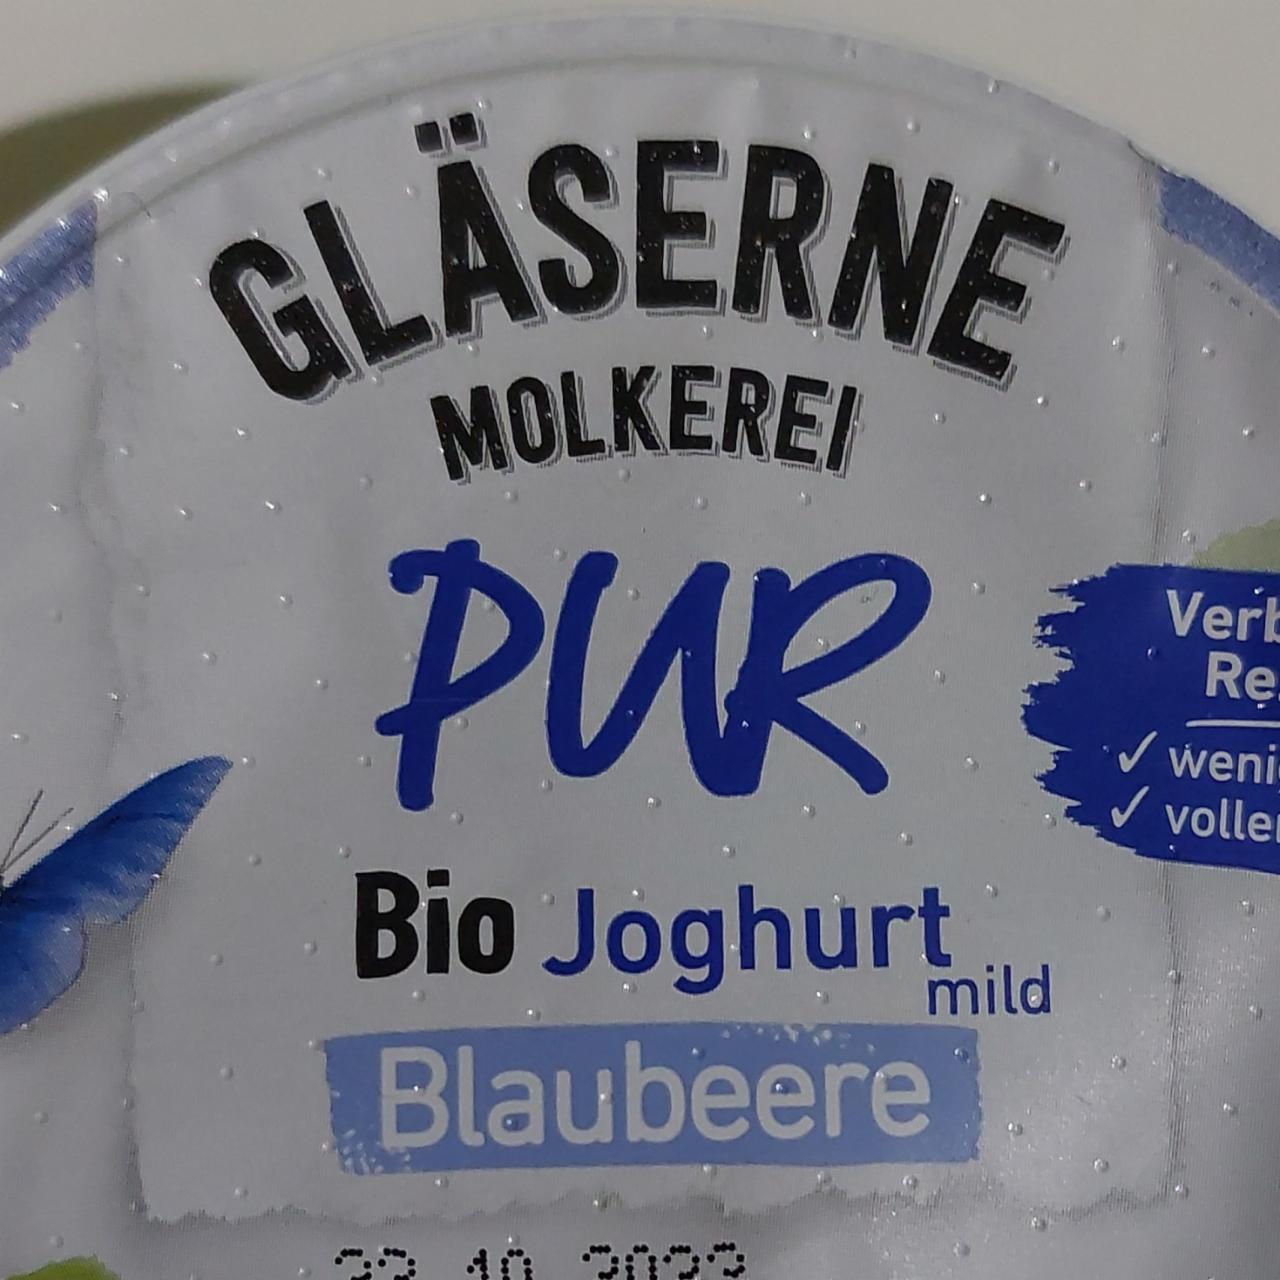 Fotografie - PUR Bio Joghurt Blaubeere Gläserne Molkerei